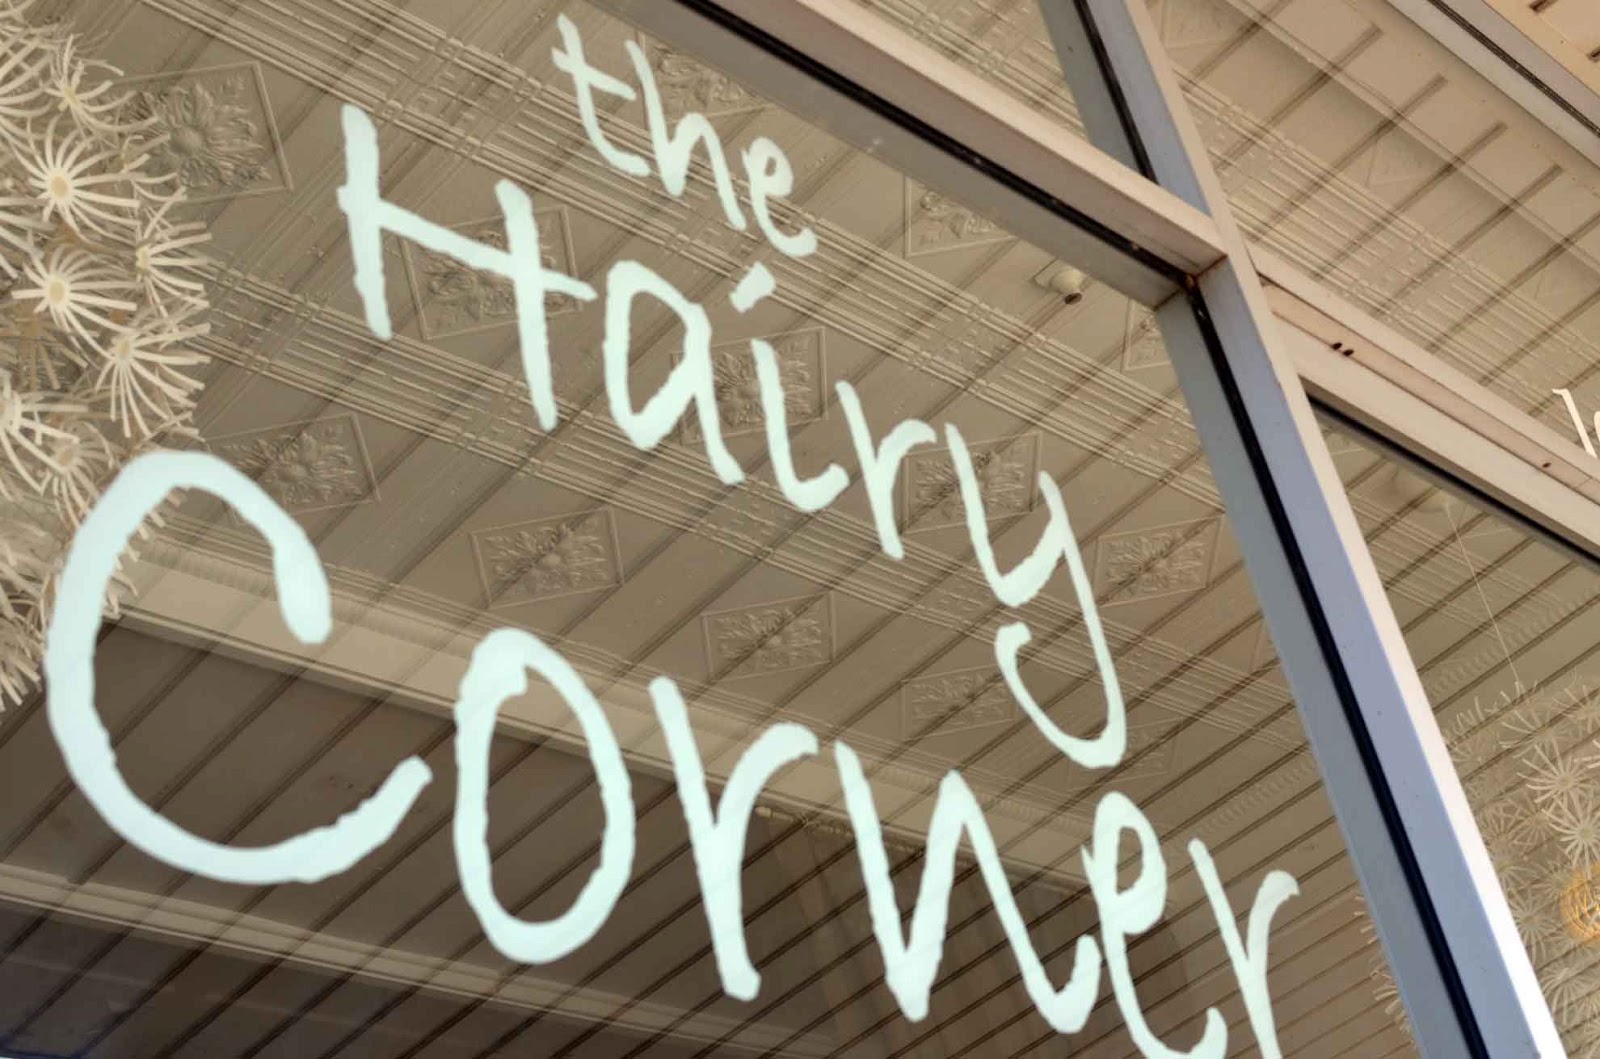 Hairy Corner